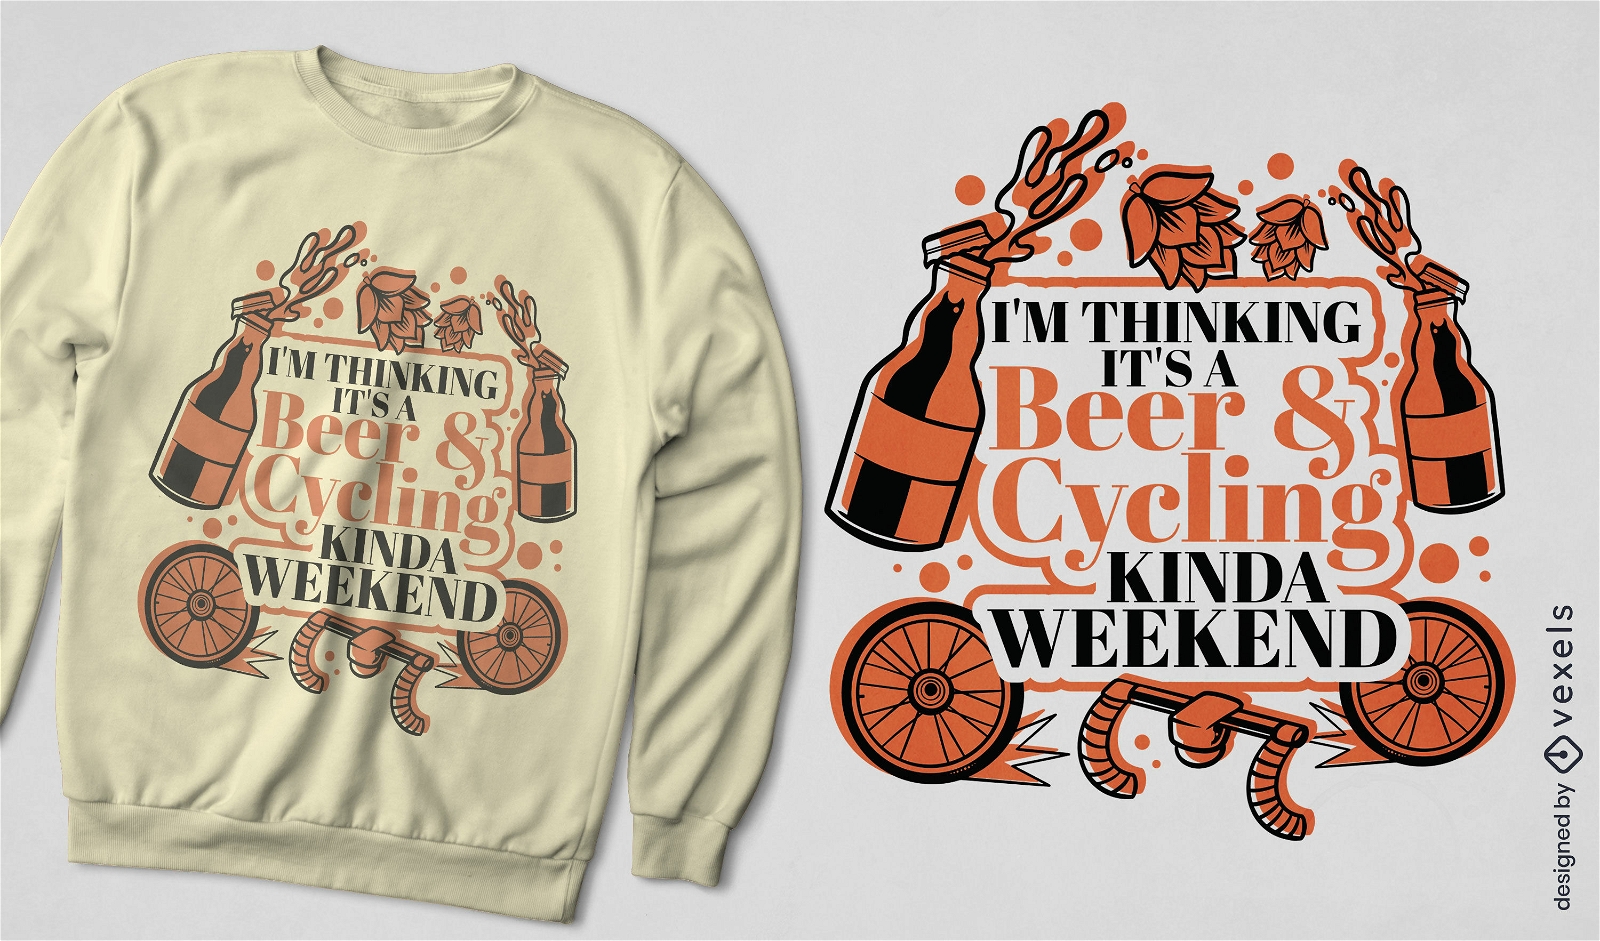 Biergetr?nk und Fahrrad-T-Shirt-Design